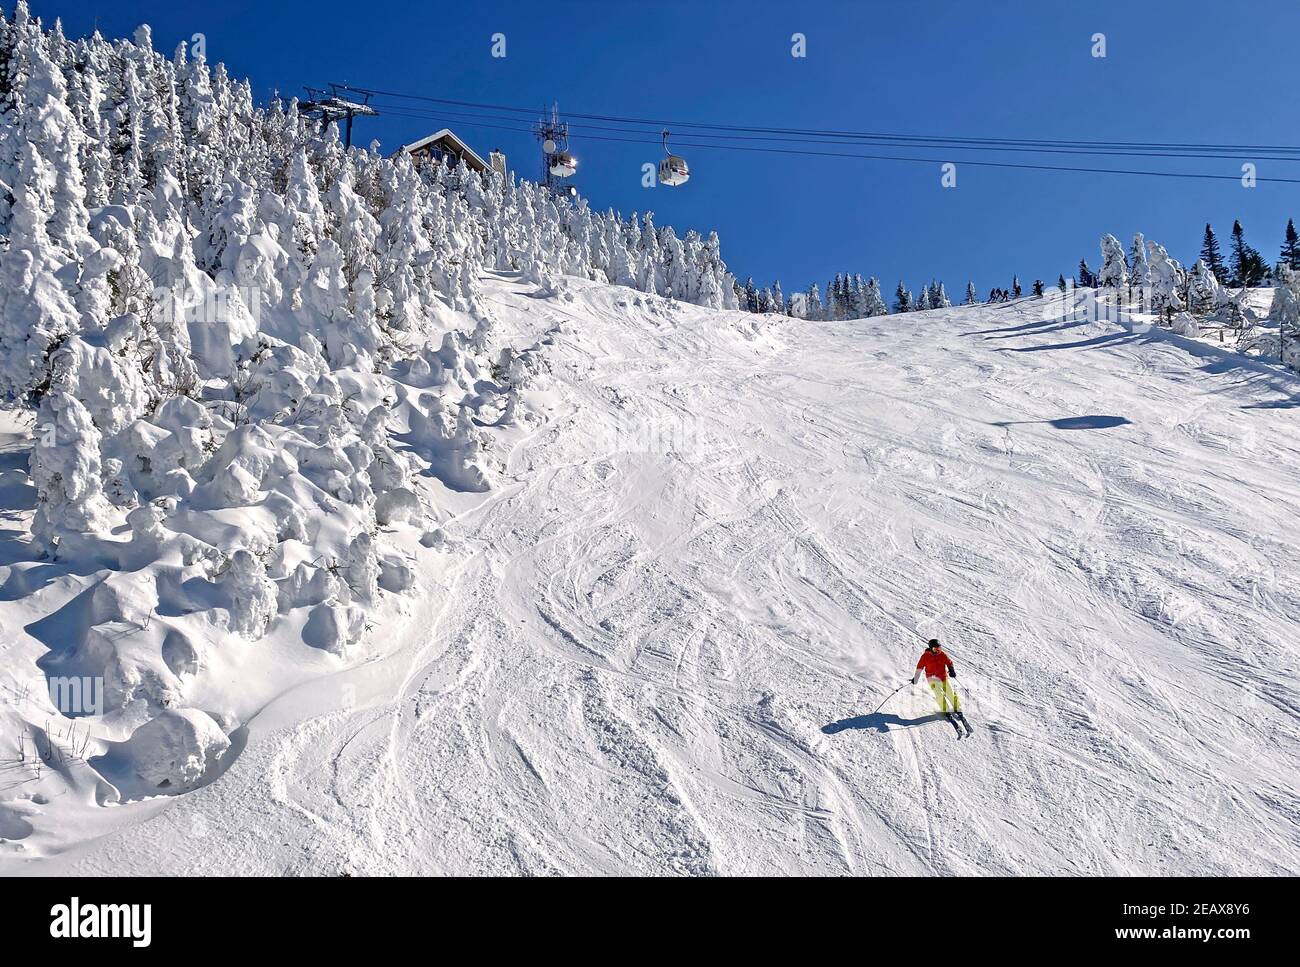 Skieur sur les pentes du Mont Tremblant avec gondoles aériennes à l'arrière-plan et arbres gelés, Québec, Canada Banque D'Images